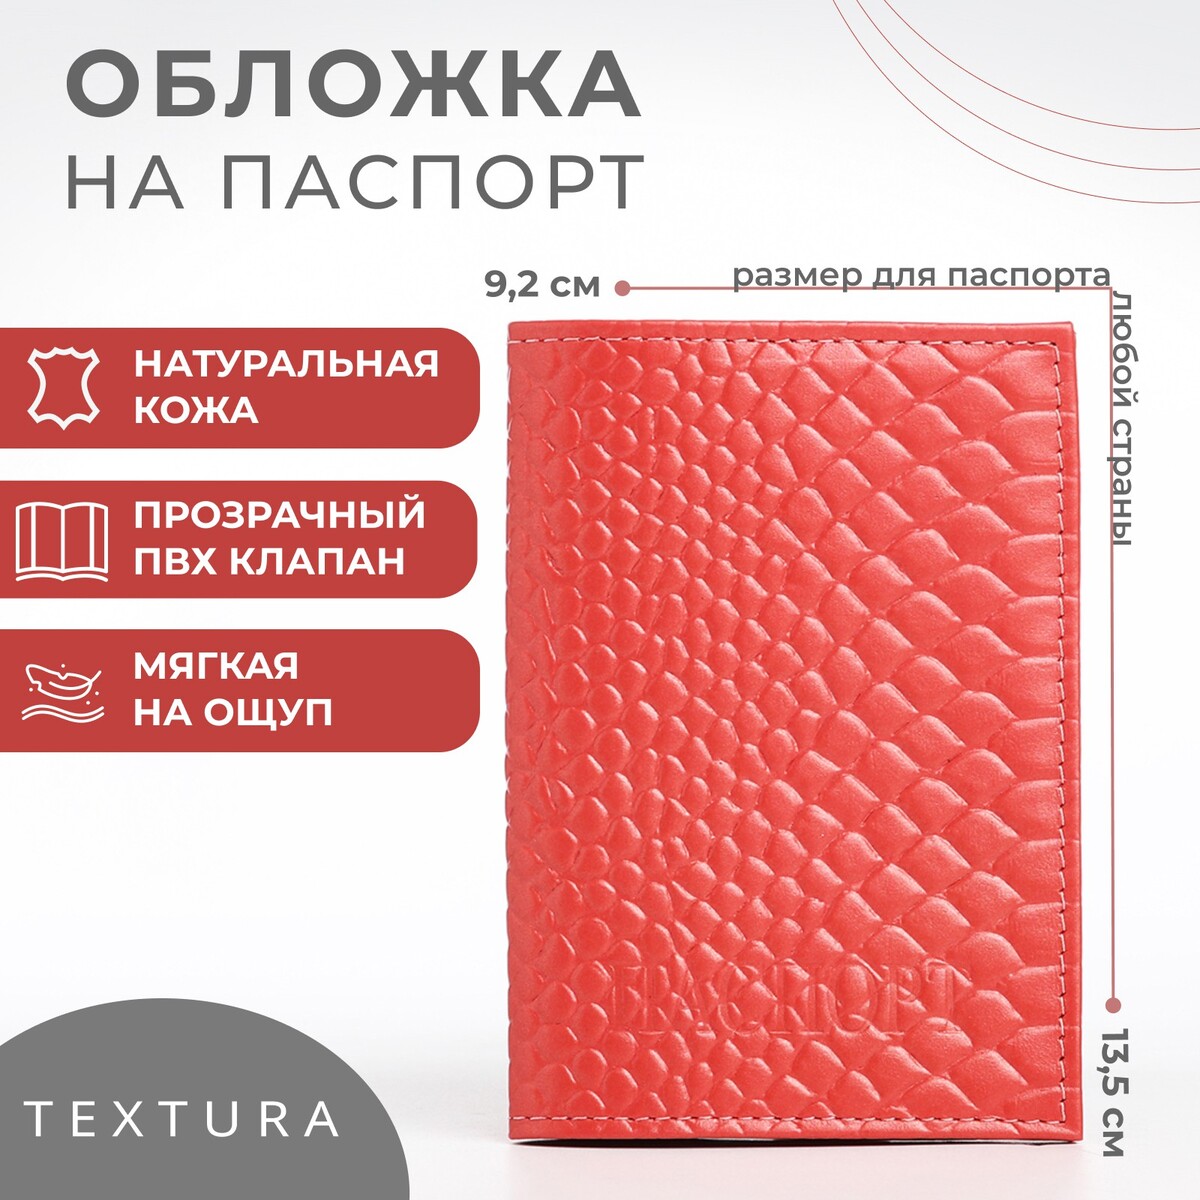 Обложка для паспорта textura, цвет чайной розы обложка для паспорта textura чайной розы